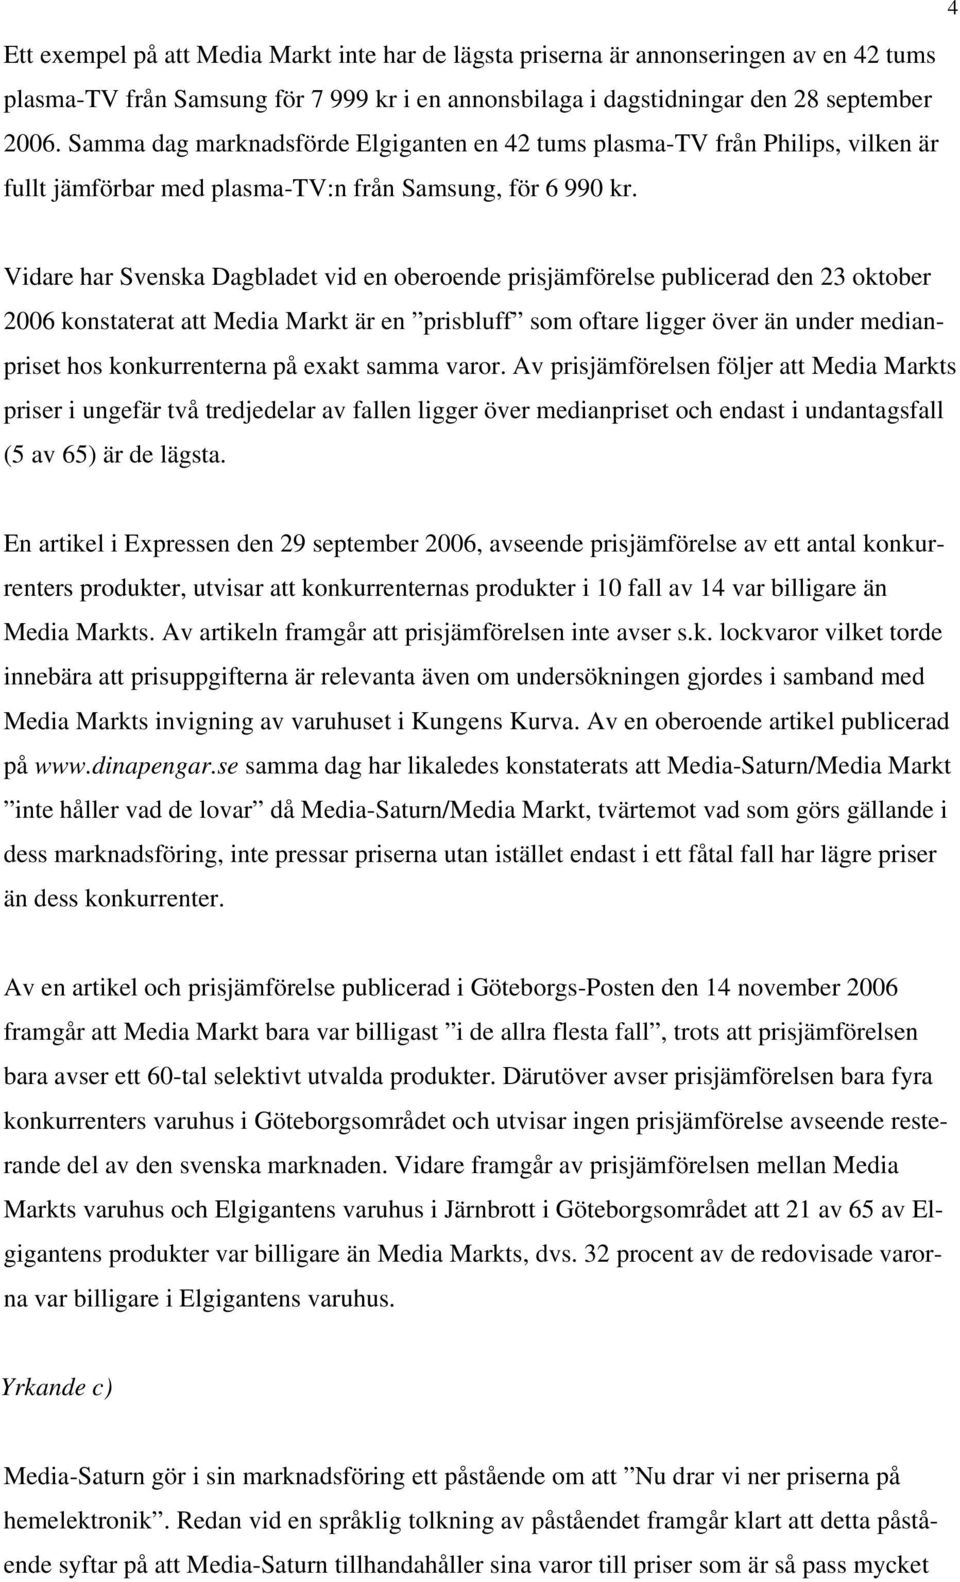 Vidare har Svenska Dagbladet vid en oberoende prisjämförelse publicerad den 23 oktober 2006 konstaterat att Media Markt är en prisbluff som oftare ligger över än under medianpriset hos konkurrenterna